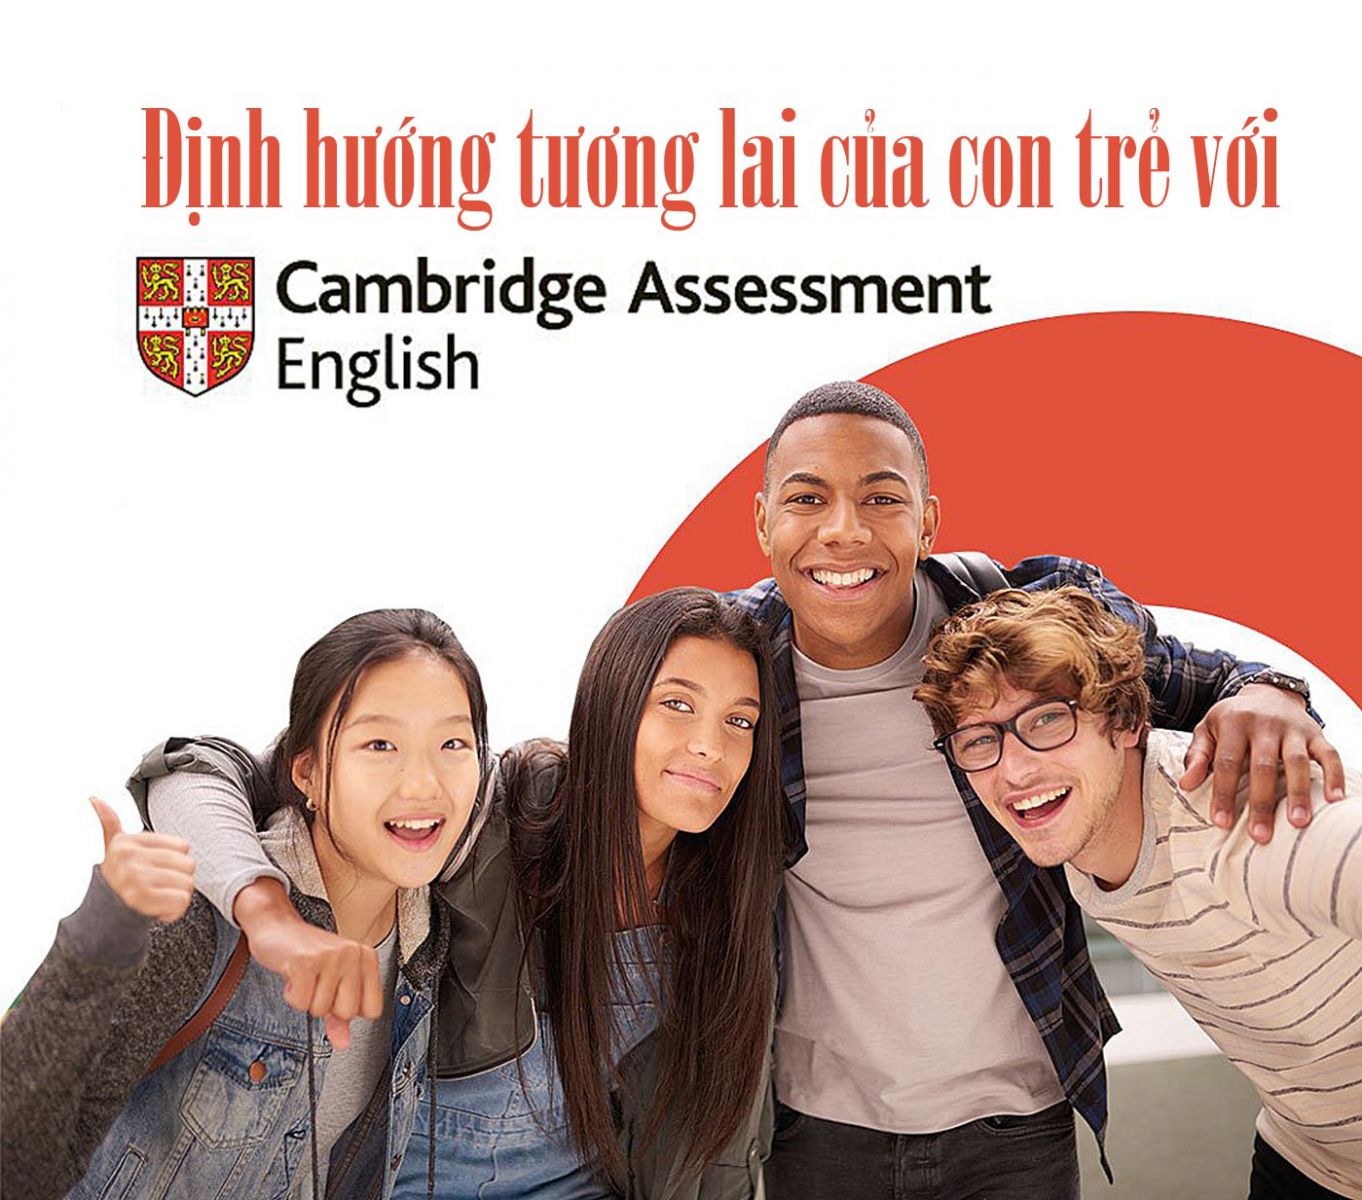 Định hướng tương lai của con trẻ với Cambridge Assessment English - Ảnh 1